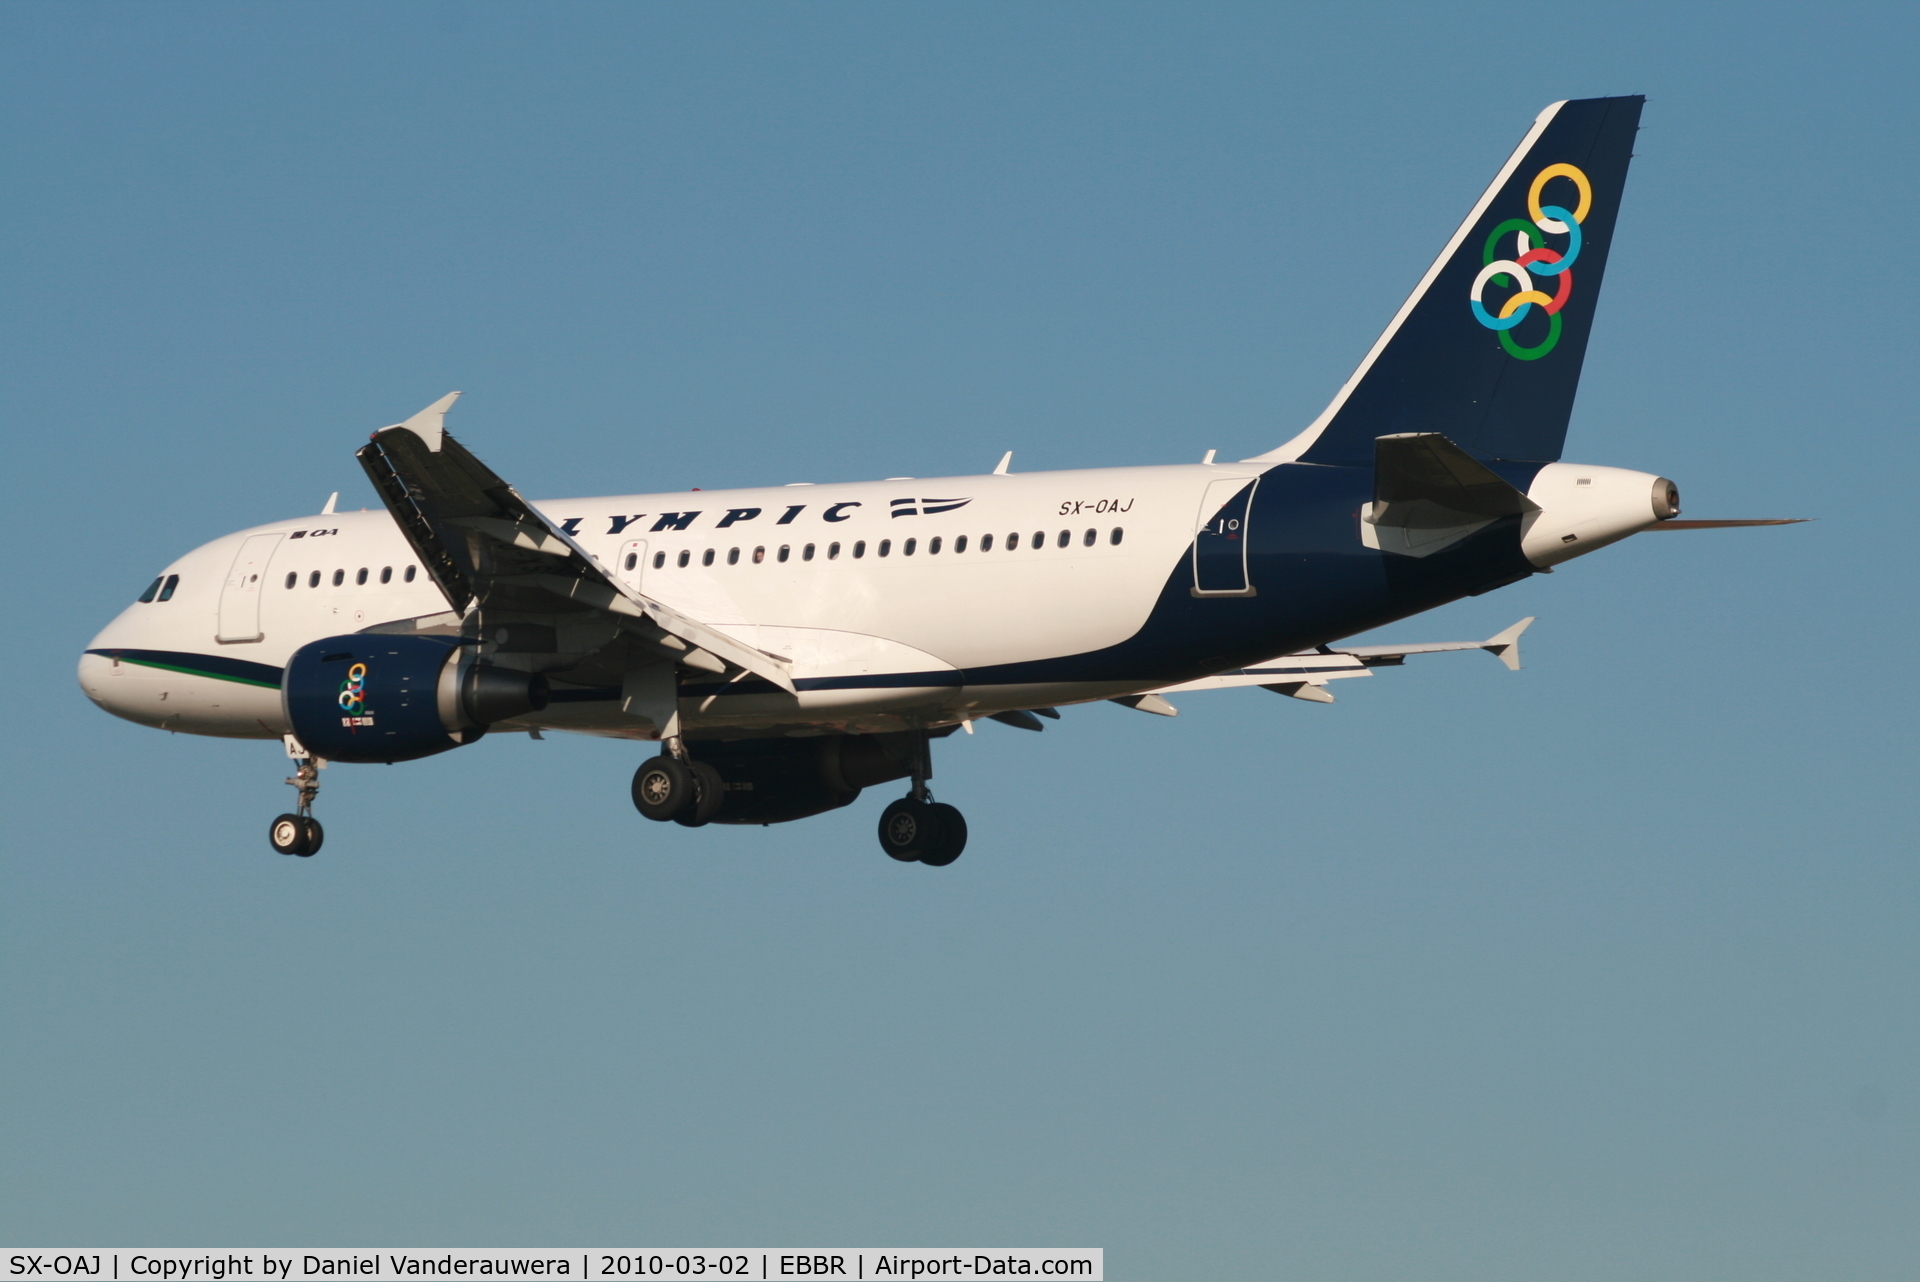 SX-OAJ, 2009 Airbus A319-112 C/N 3905, Flight OA145 is descending to RWY 25L